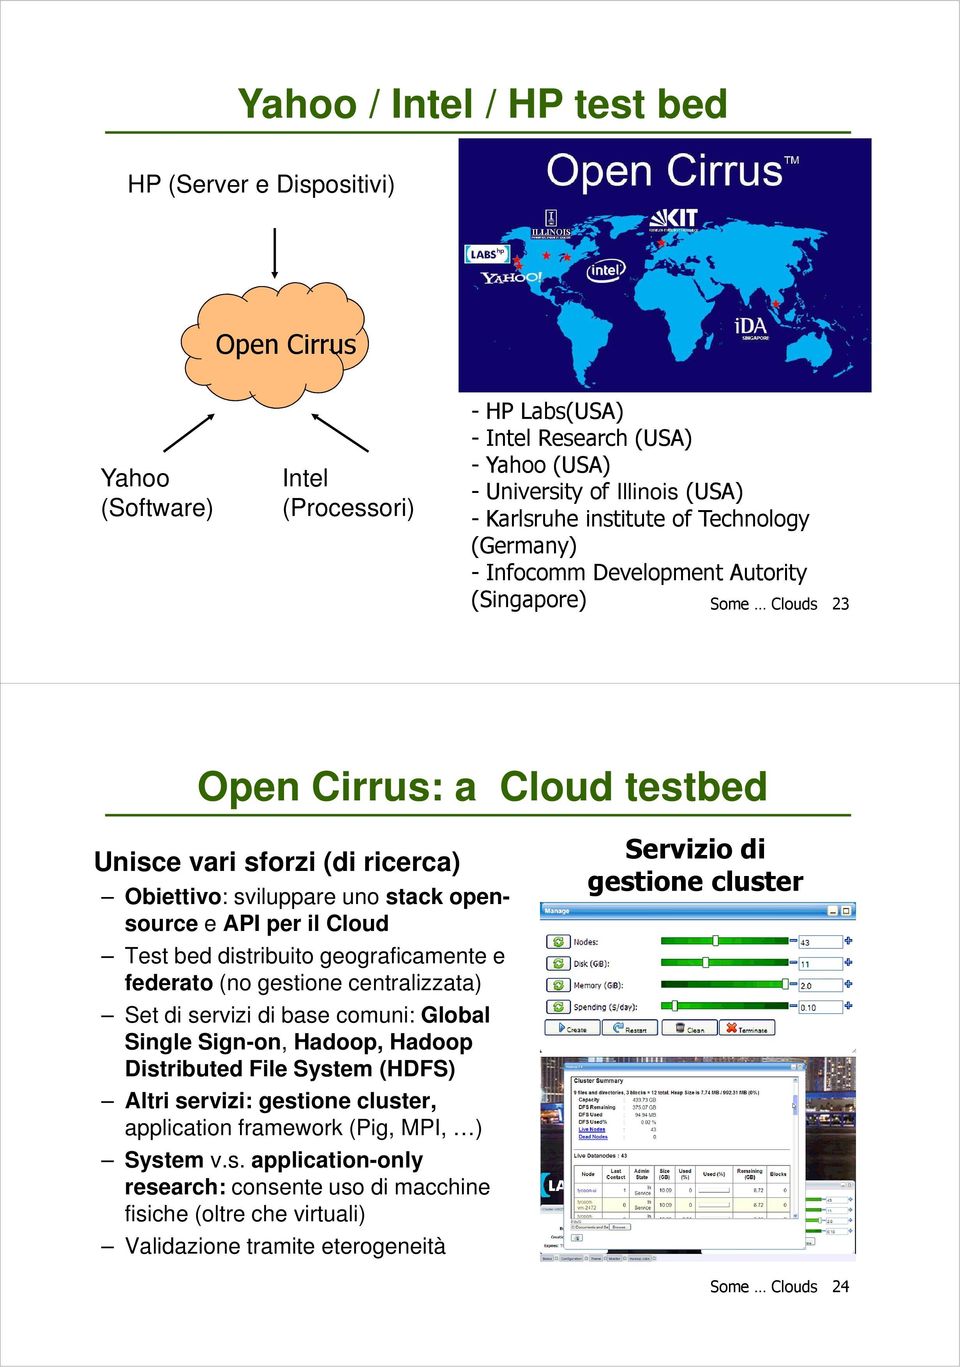 API per il Cloud Test bed distribuito geograficamente e federato (no gestione centralizzata) Set di servizi di base comuni: Global Single Sign-on, Hadoop, Hadoop Distributed File System (HDFS) Altri